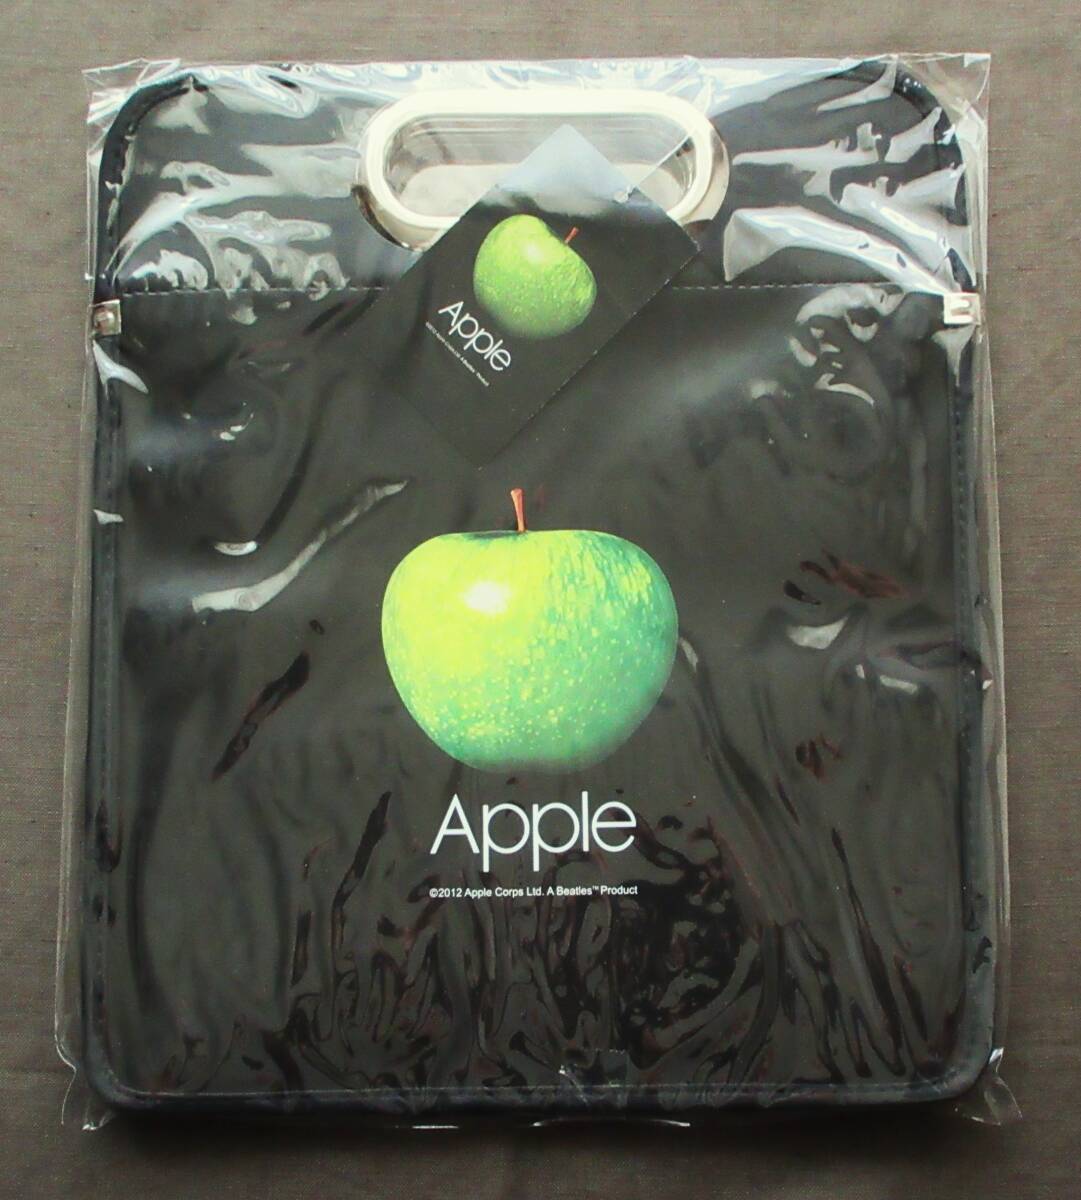 ( не использовался неиспользуемый товар ) Британия Apple фирма легализация Beatles [ переносная сумка ] чёрный цвет / с биркой / редкость негодный версия / полная распродажа 2012 год /Beatles Logo